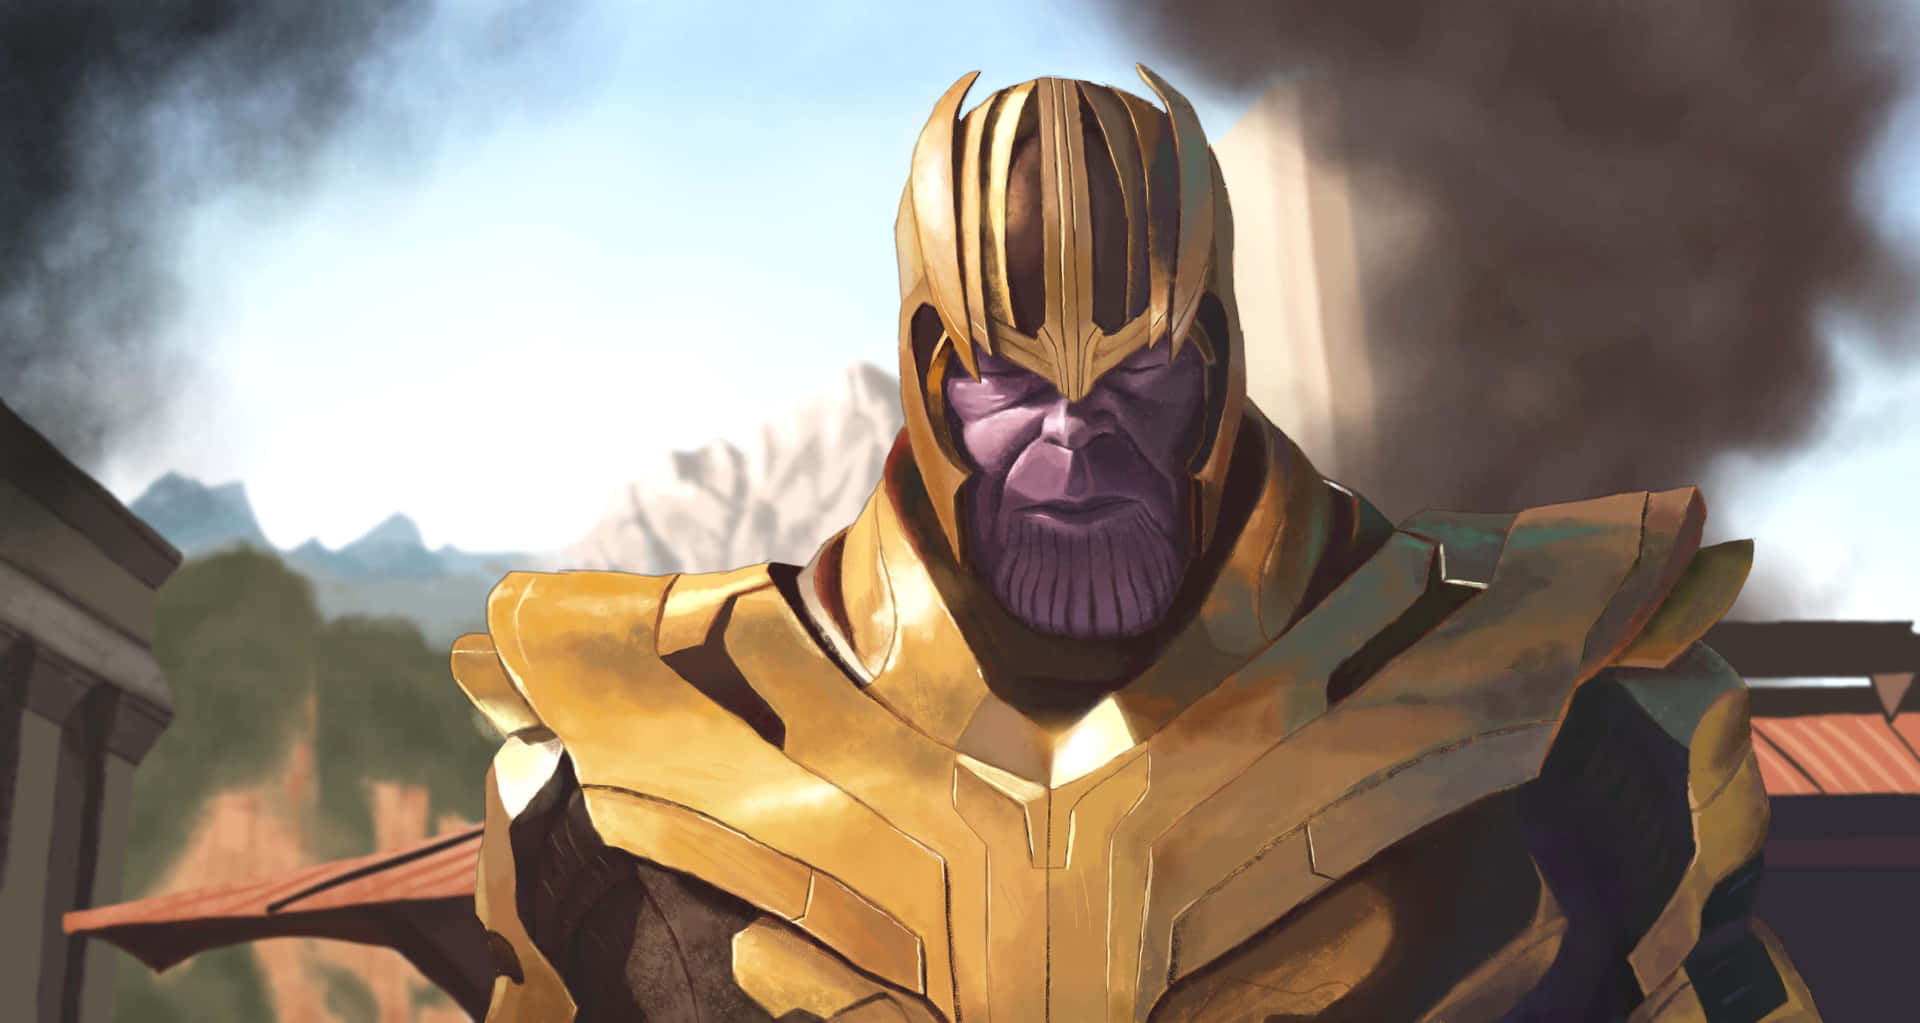 Thanos, Verdenes Ødelægger, kan se over din skulder. Wallpaper